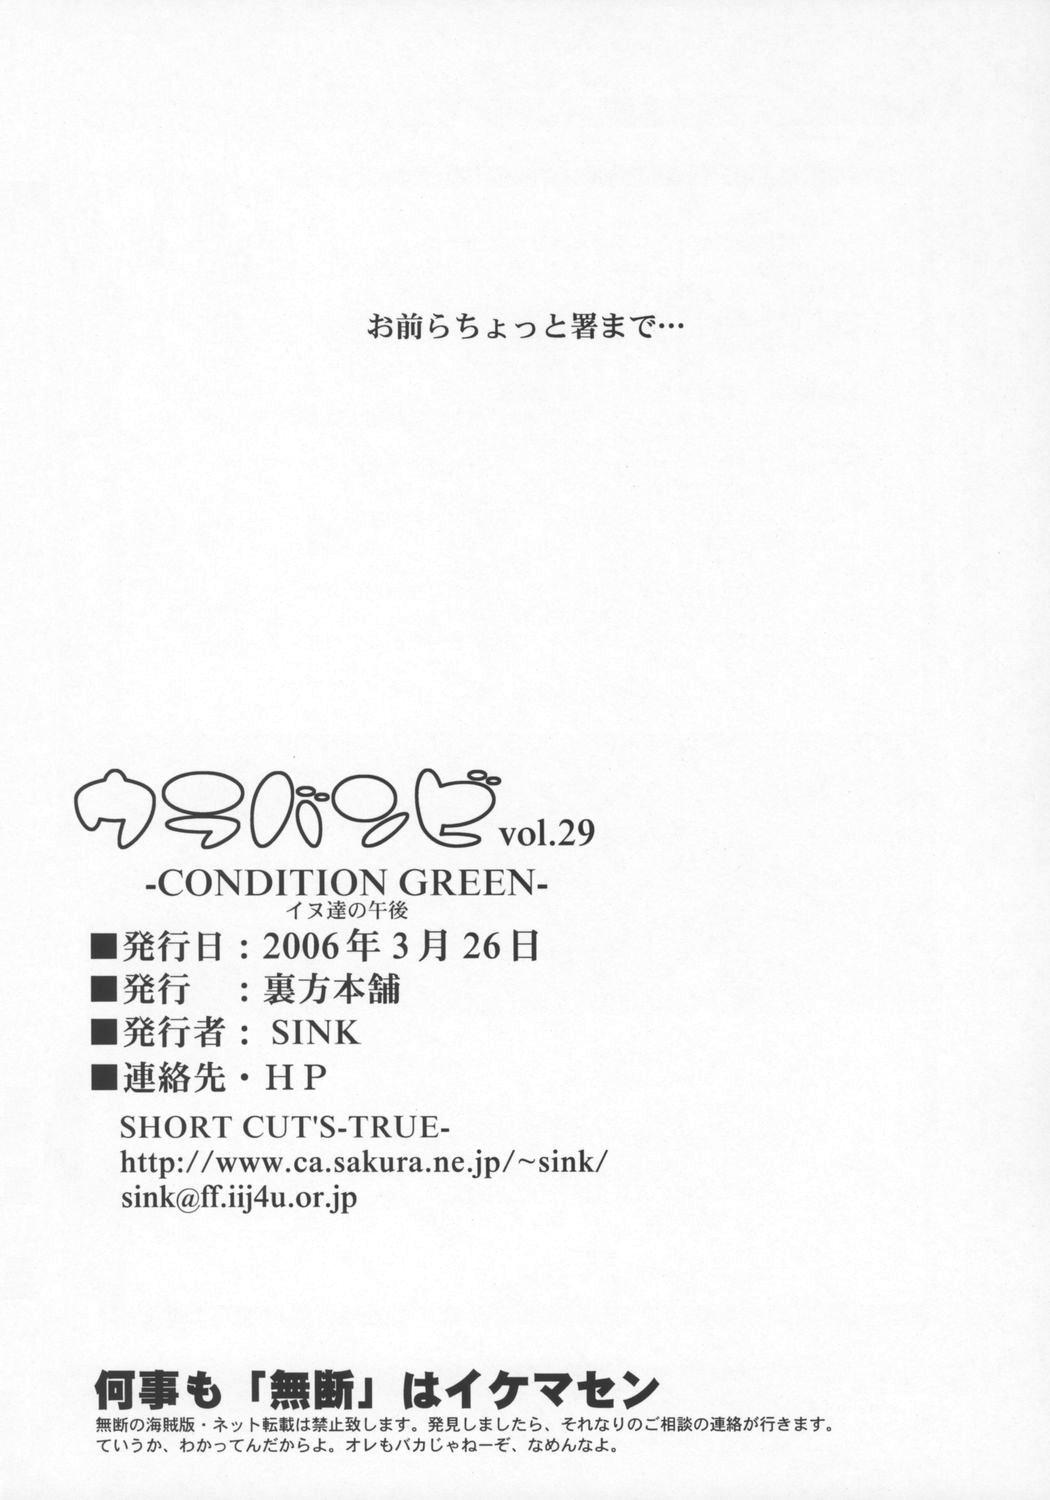 Urabambi Vol. 29 - Condition Green 25